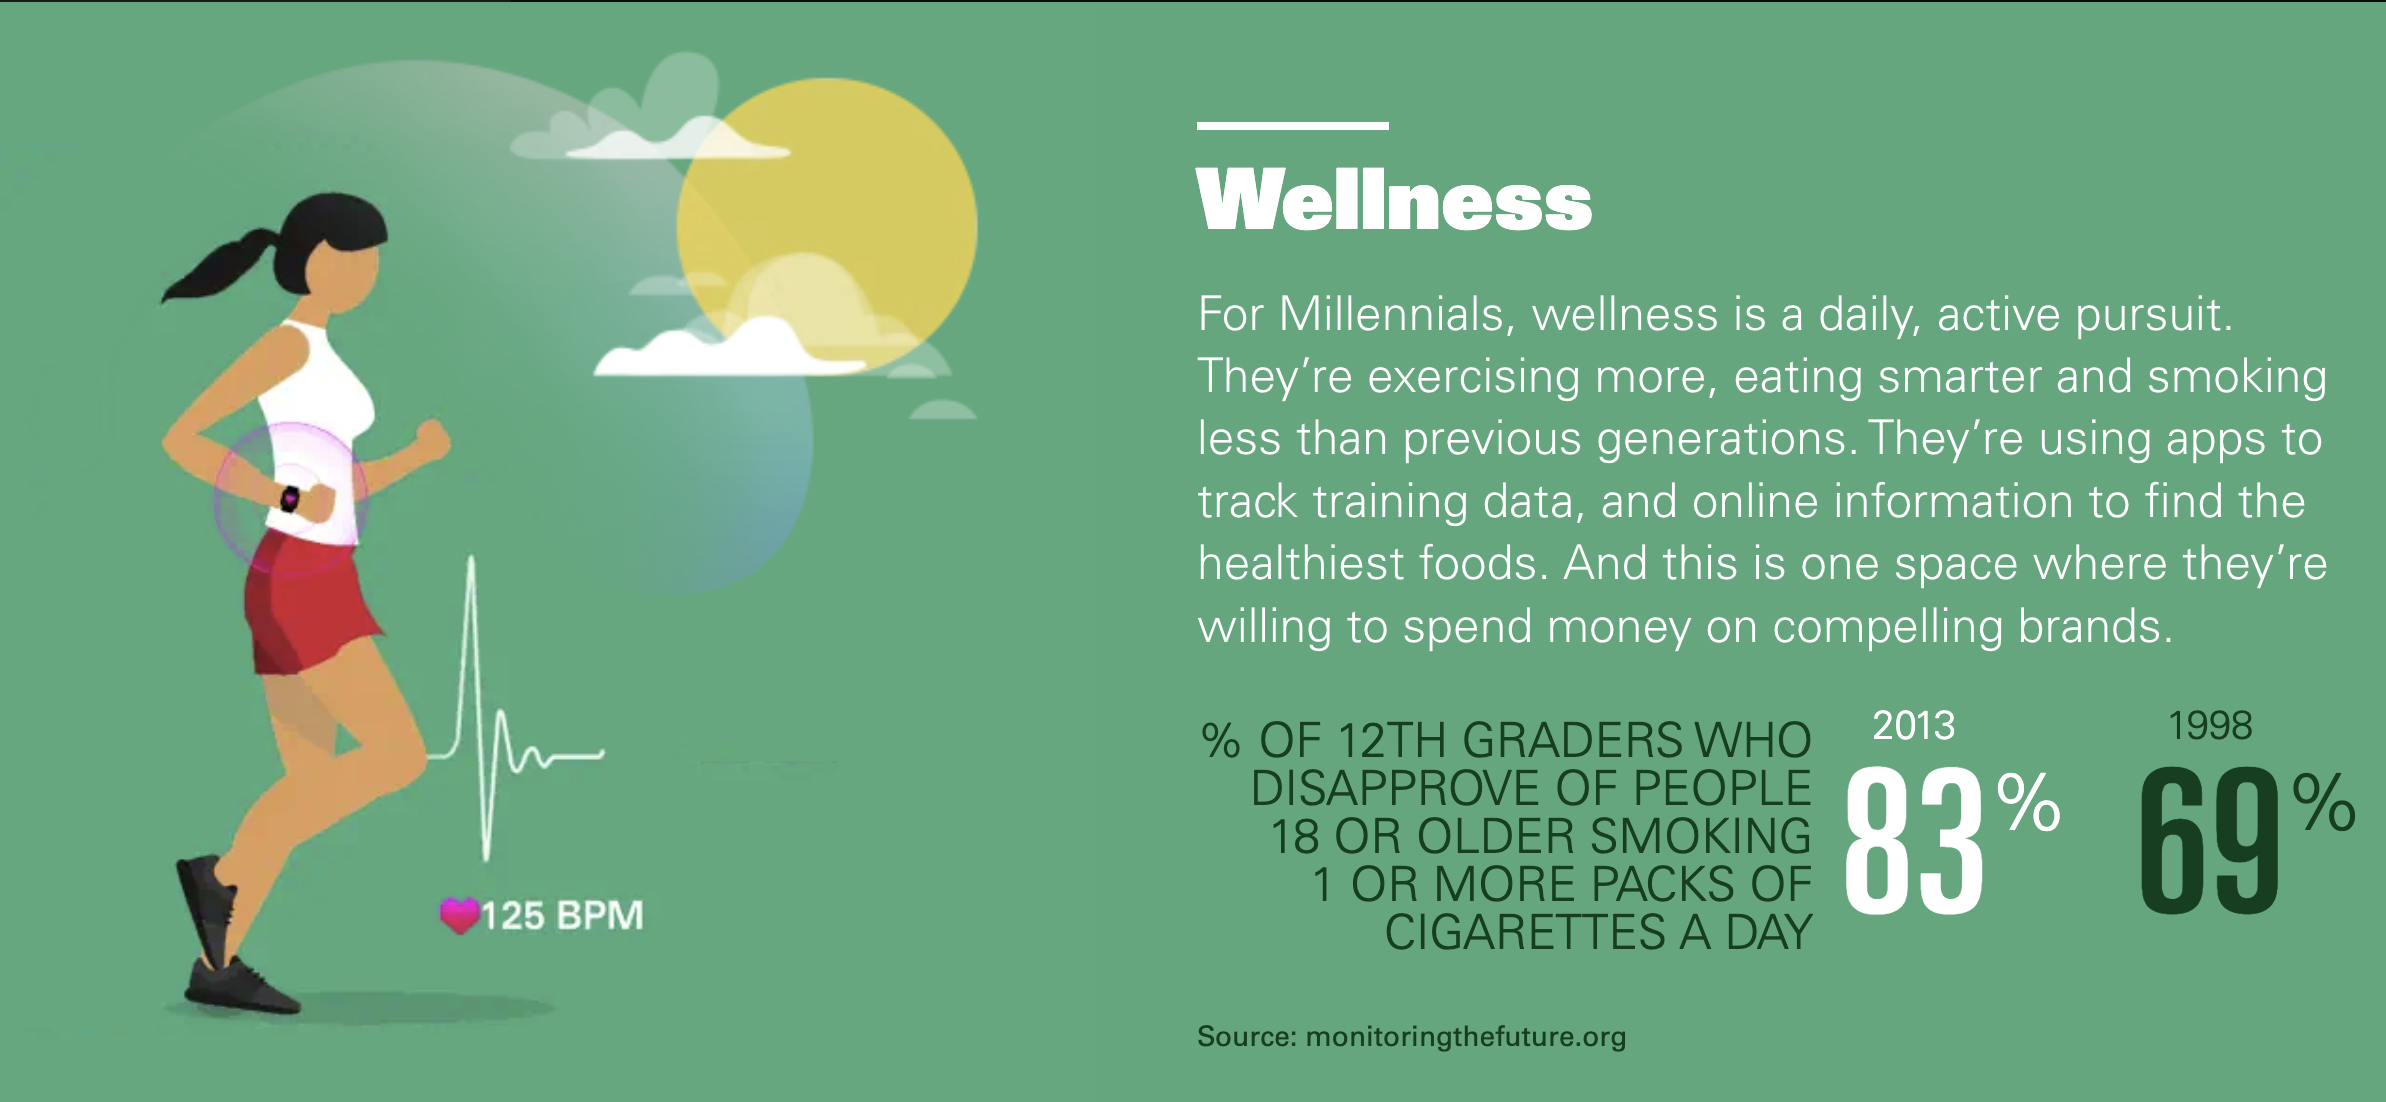 wellness and millennials